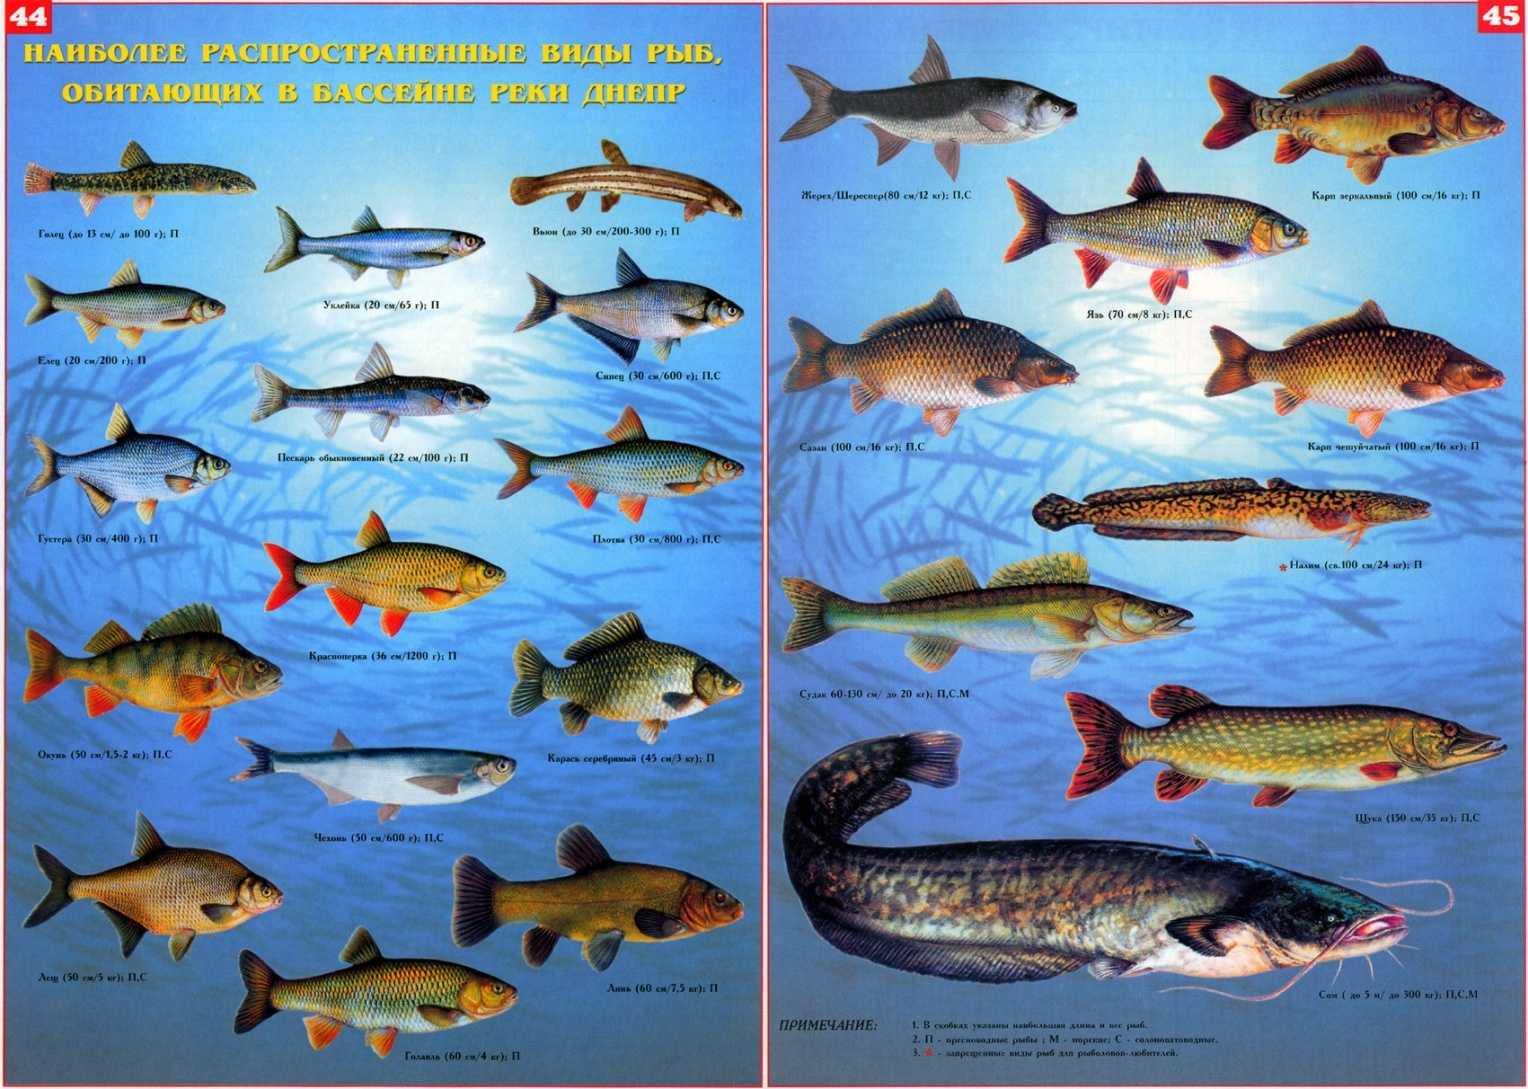 Буффало (рыба). речная рыба буффало: фото и описание. где водится рыба буффало?